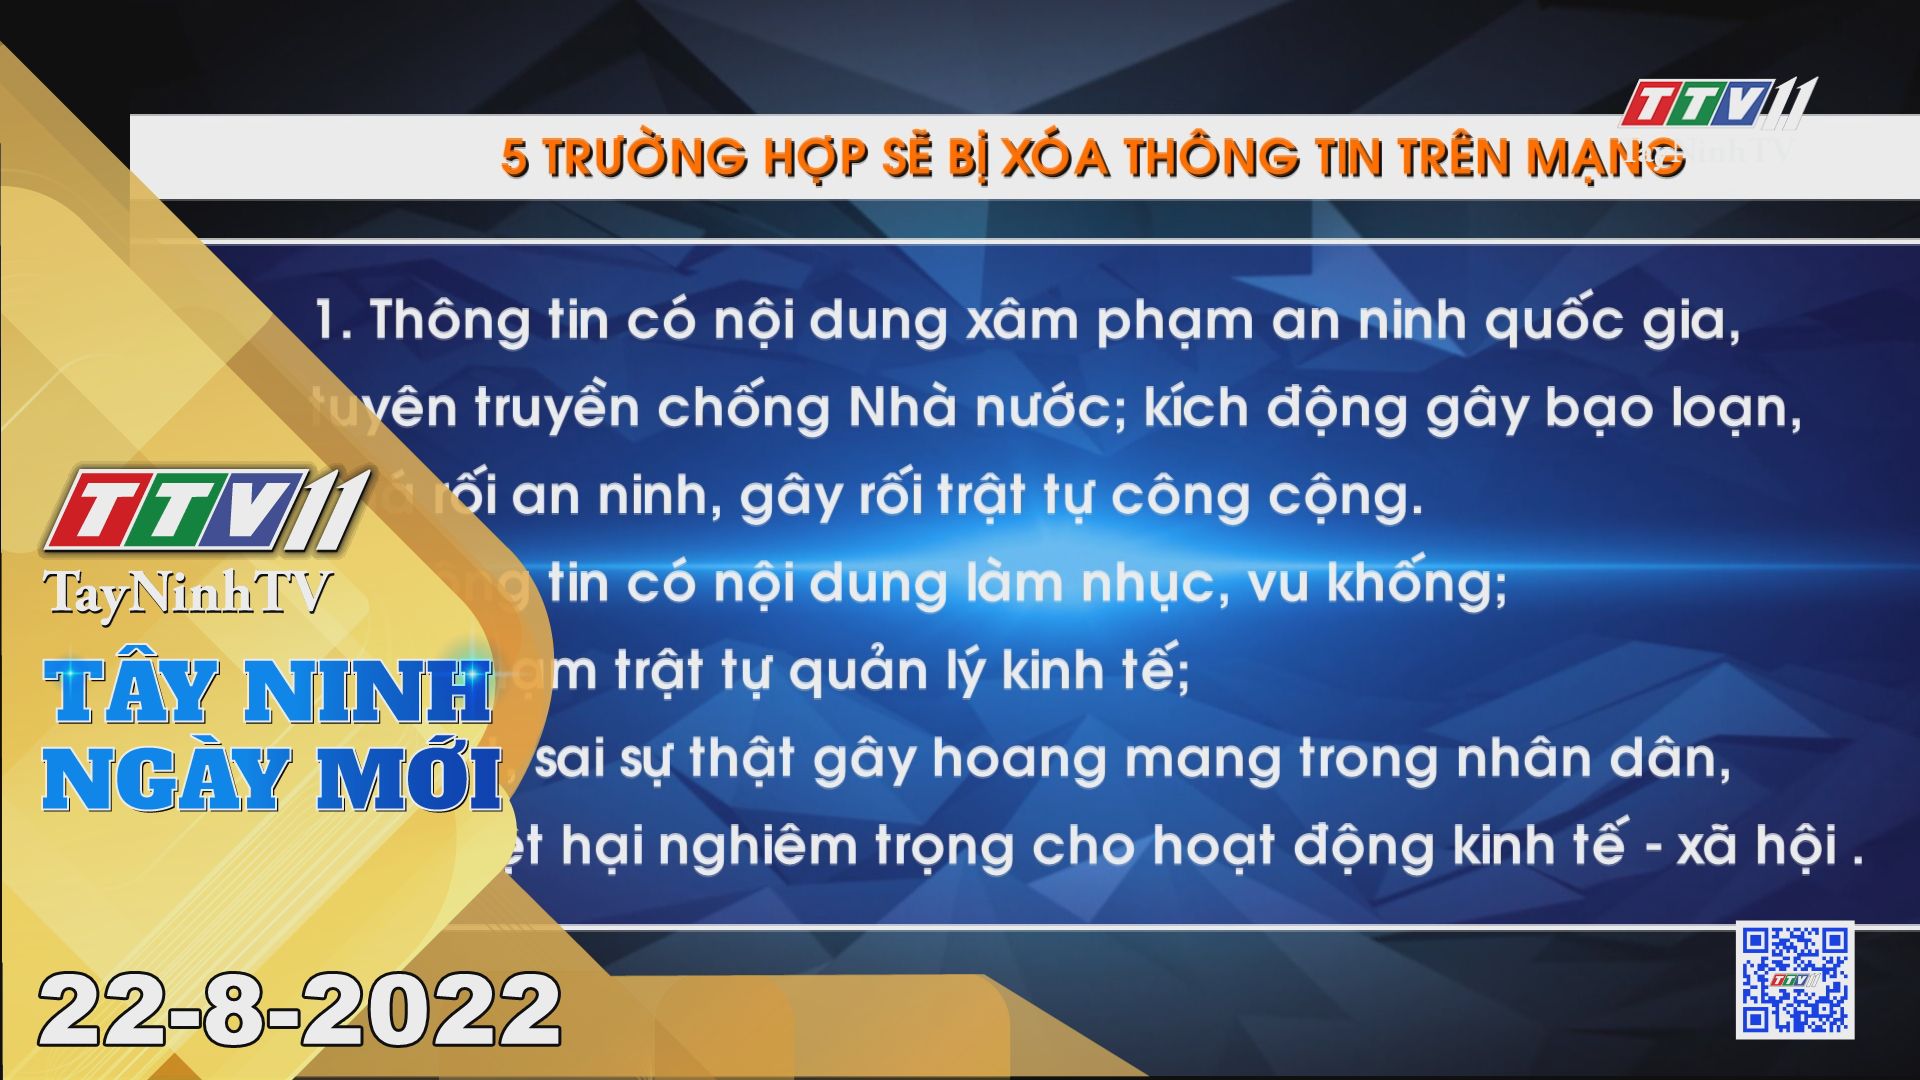 Tây Ninh ngày mới 22-8-2022 | Tin tức hôm nay | TayNinhTV